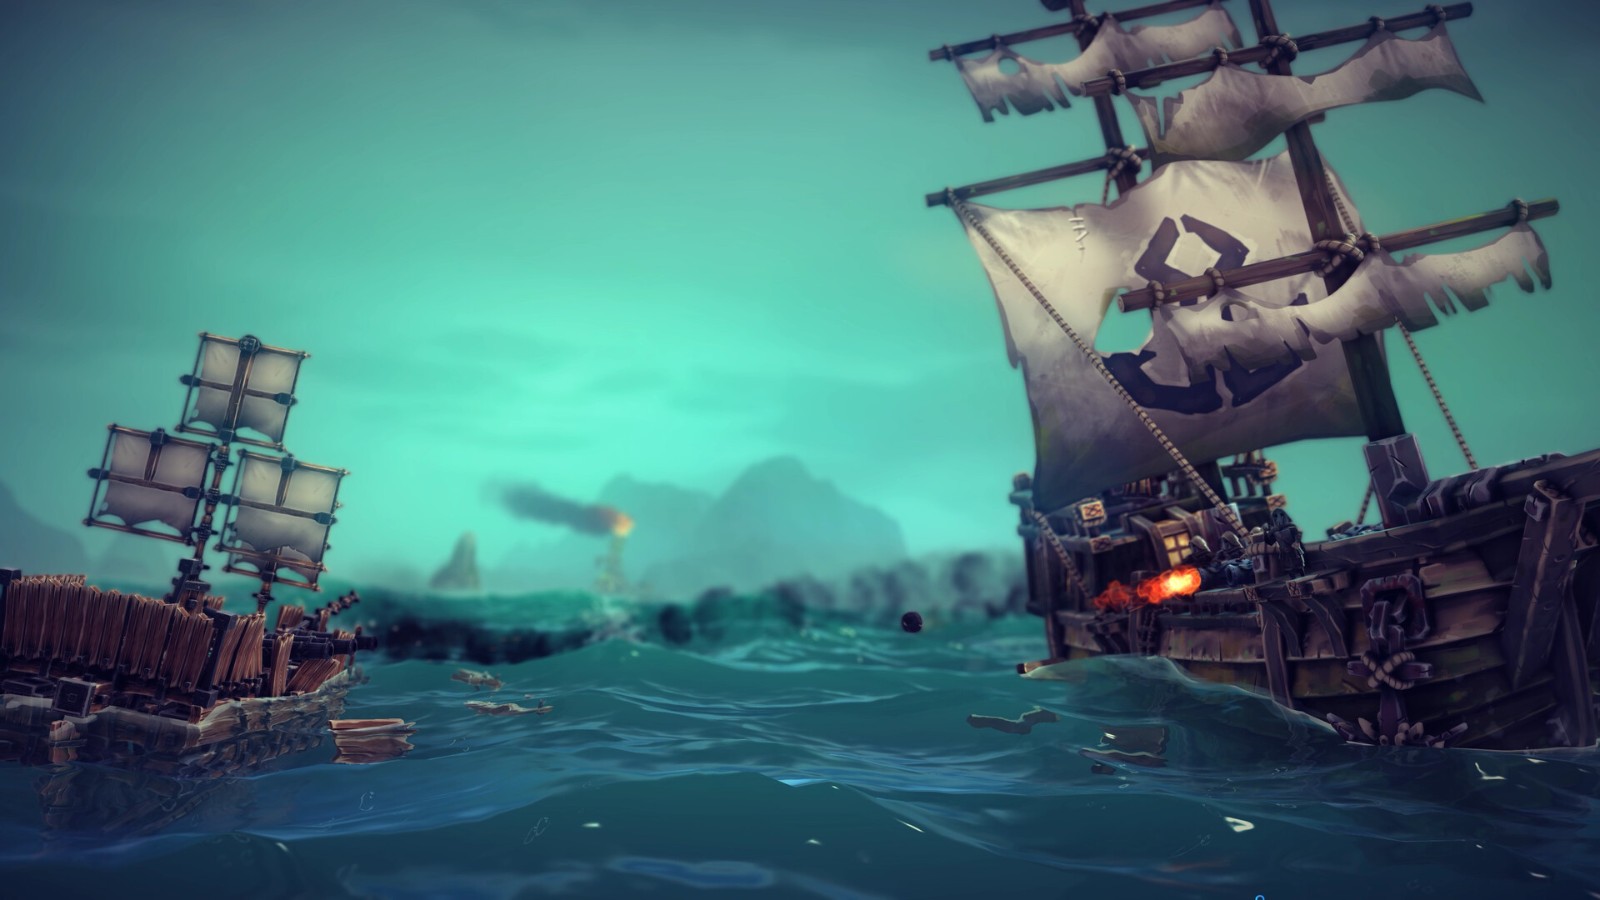 物理建制游戏《围攻》齐新DLC“割裂之海” 5月24日发售